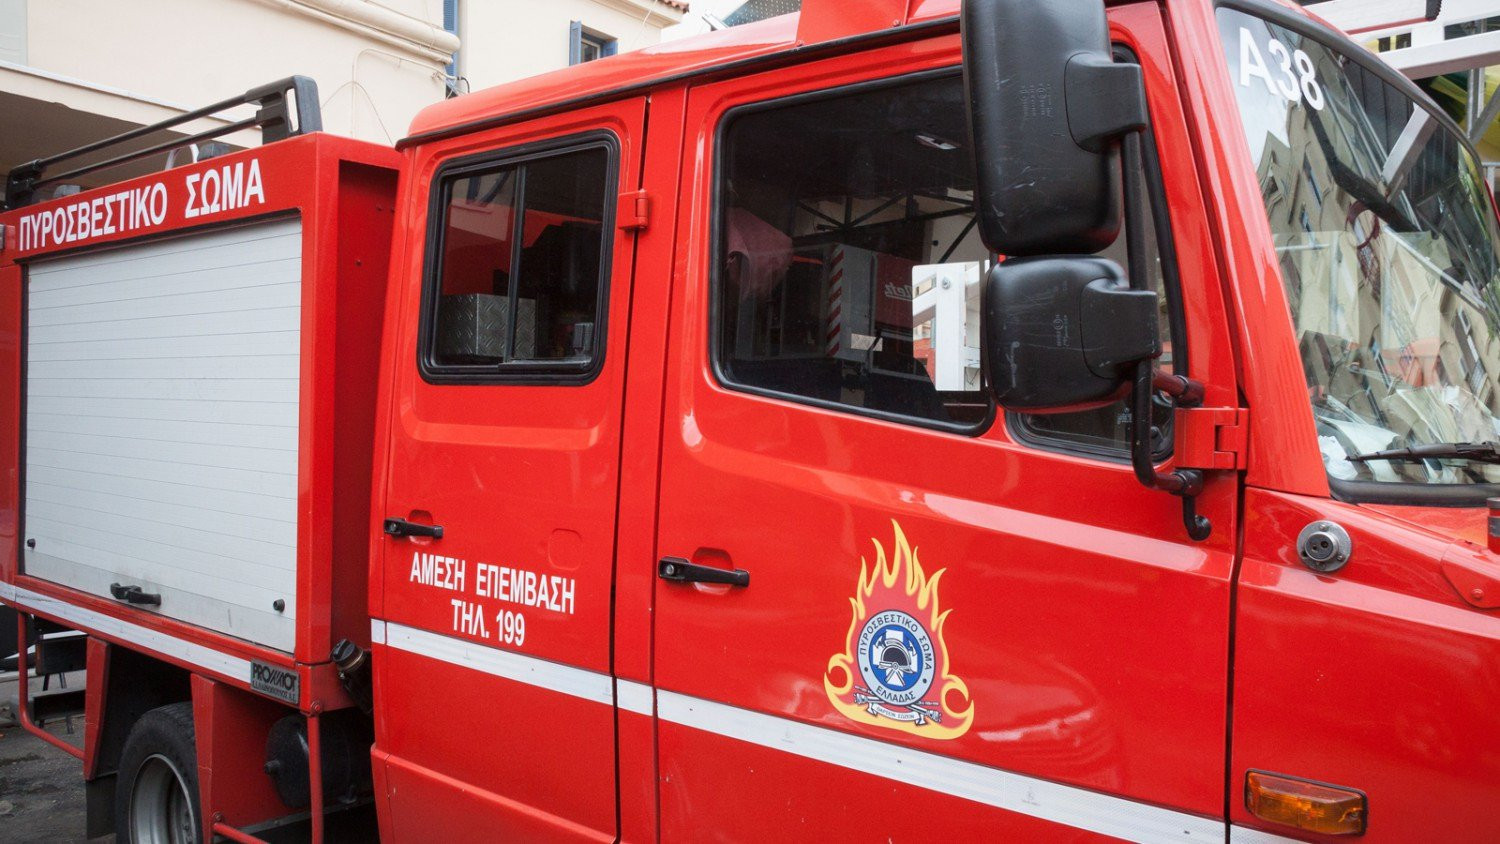 Διόνυσος: Επιχείρηση της Πυροσβεστικής για ύποπτο φάκελο σε γραμματοκιβώτιο οικίας